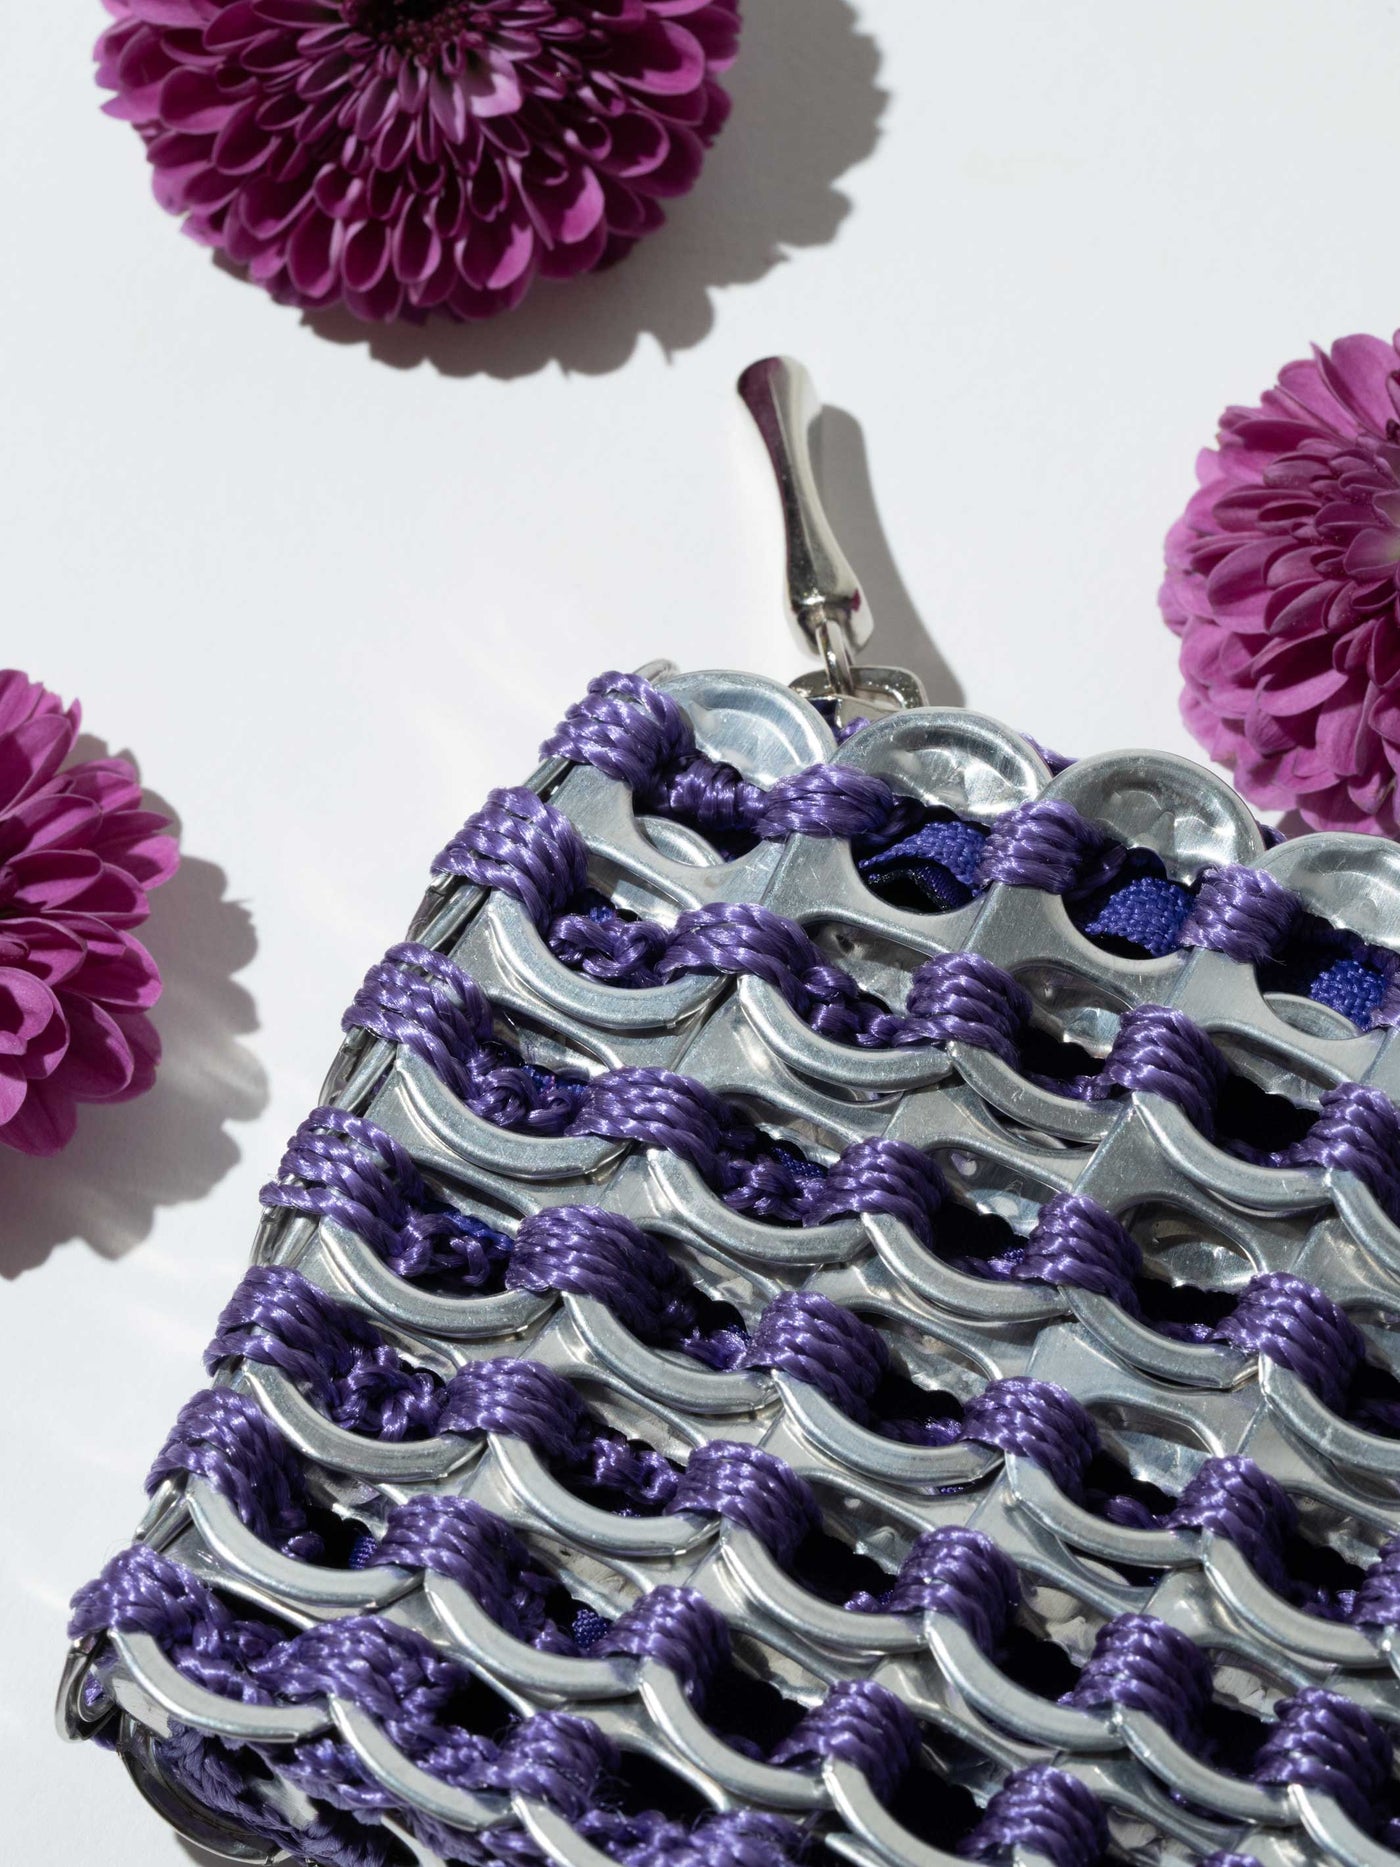 alt="purple flowers with purple coin purse - escama studio"